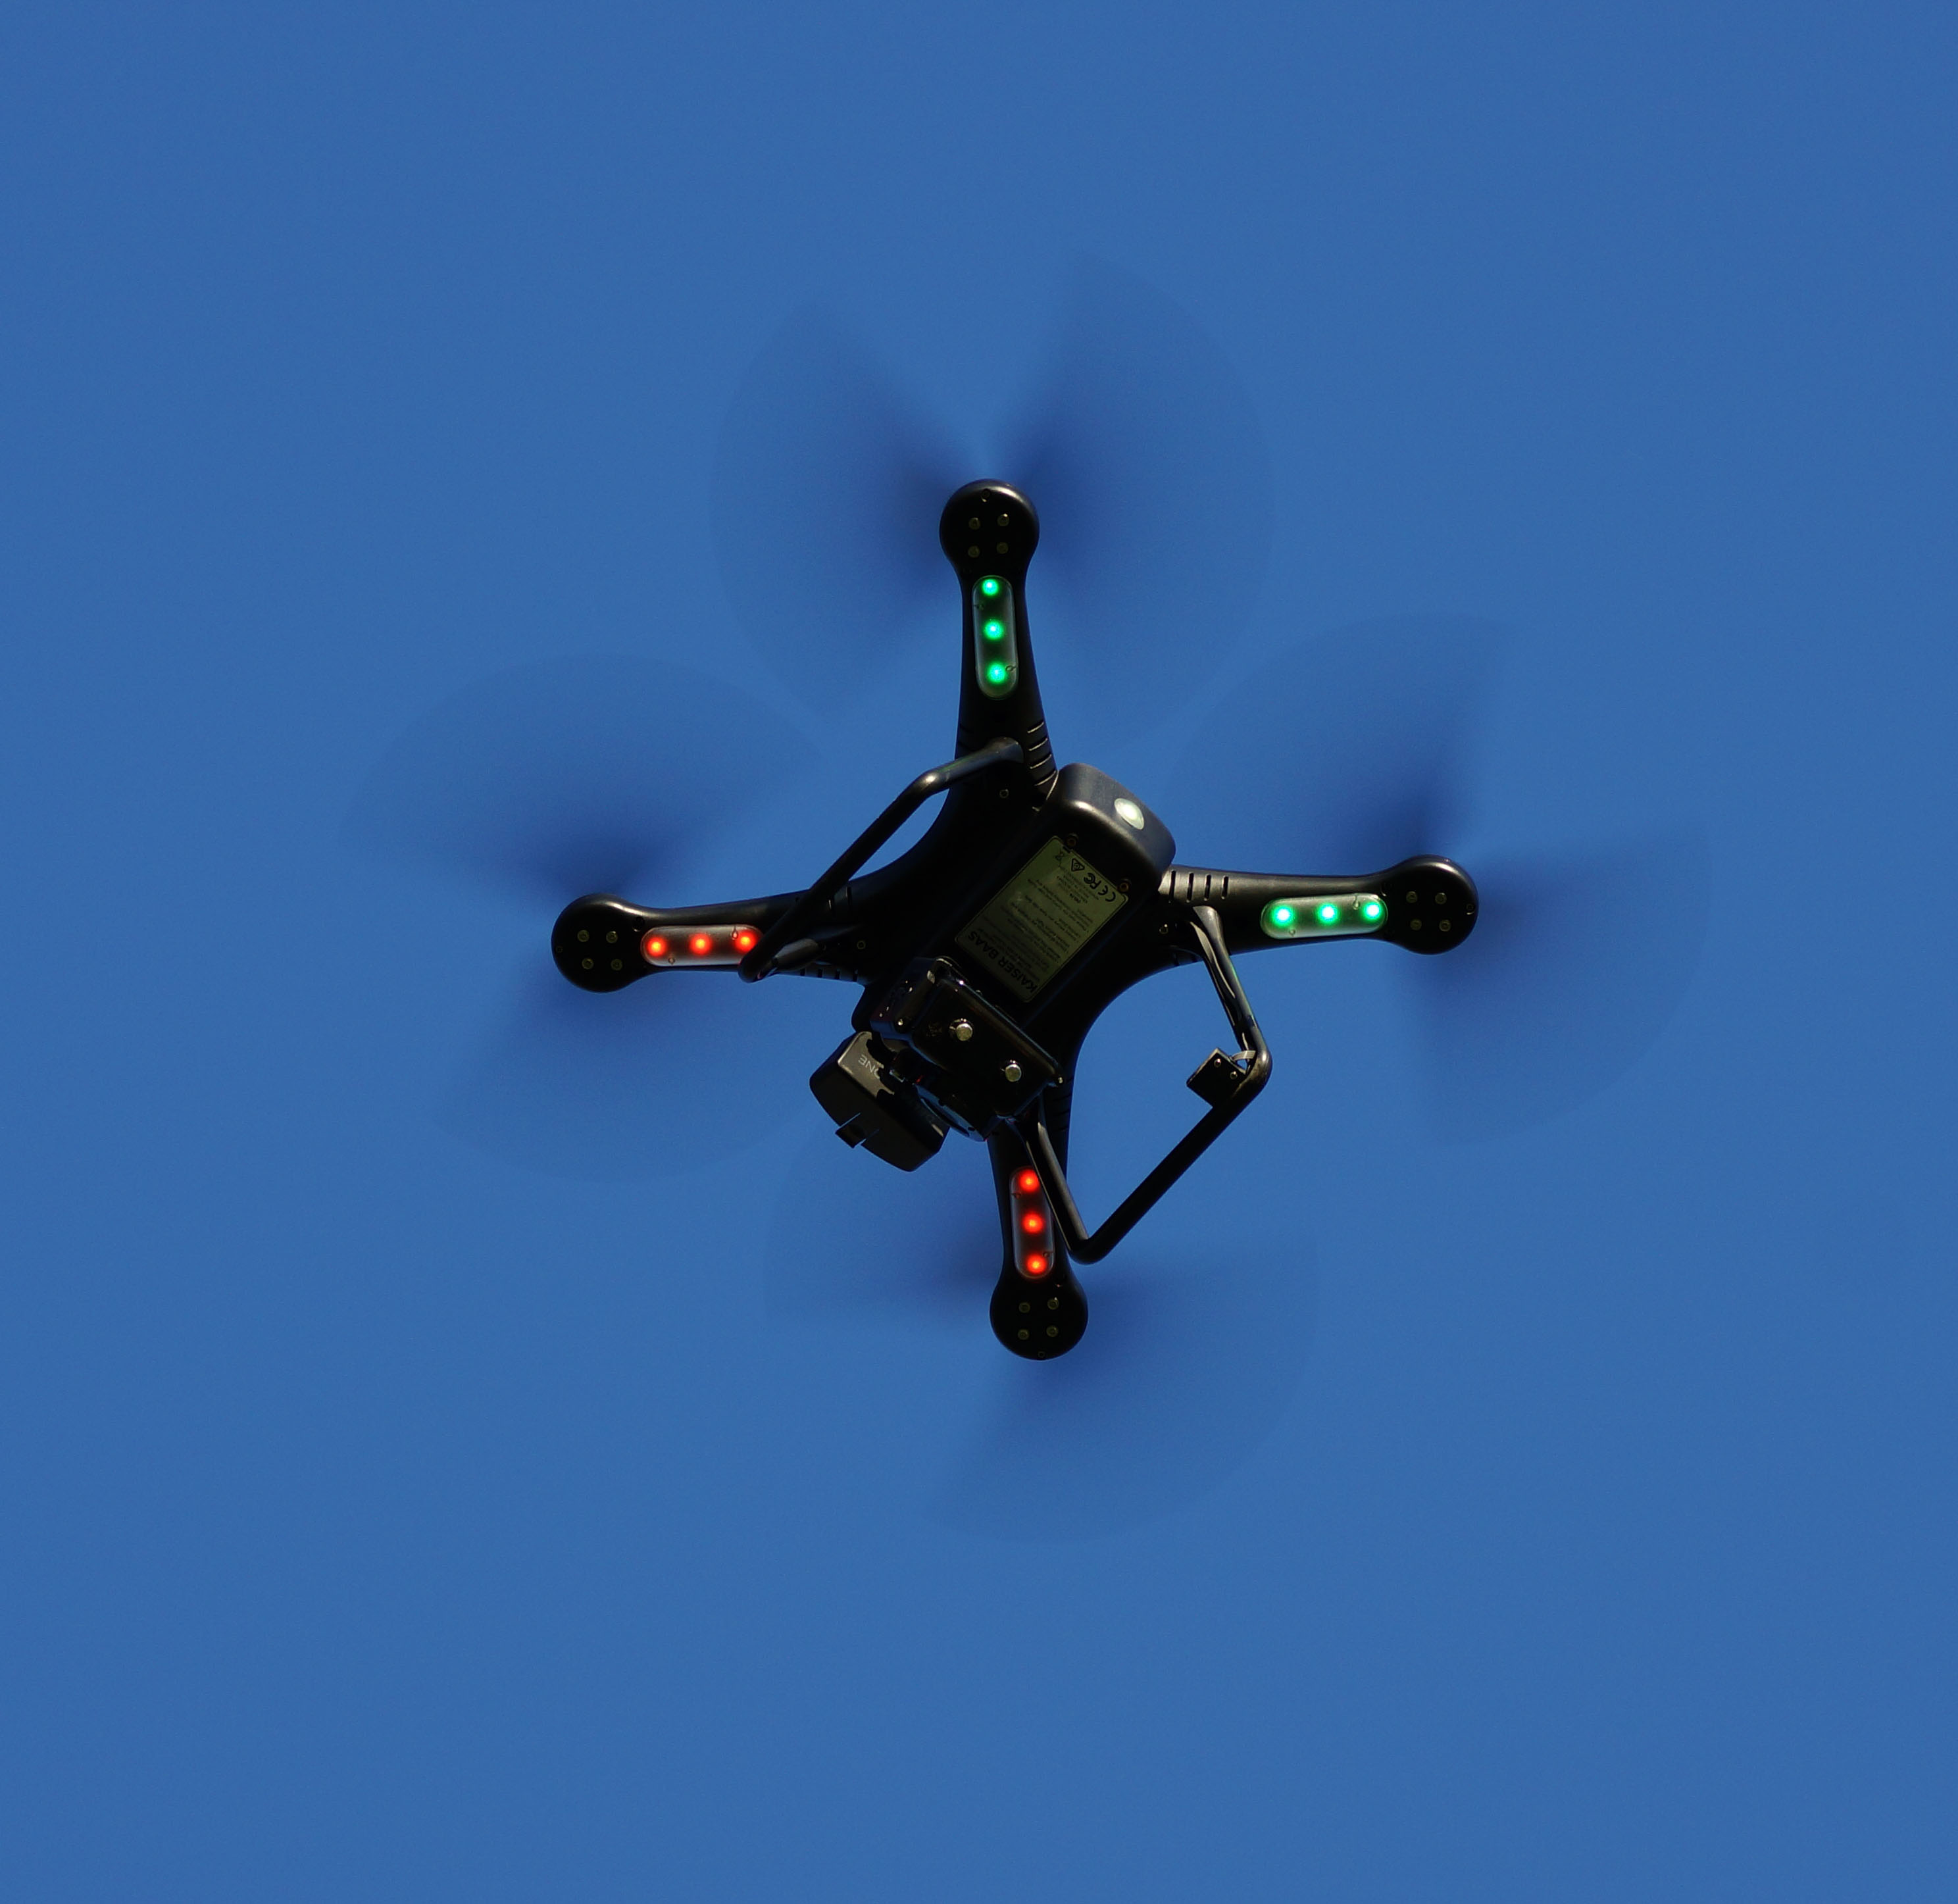 Delta Drone